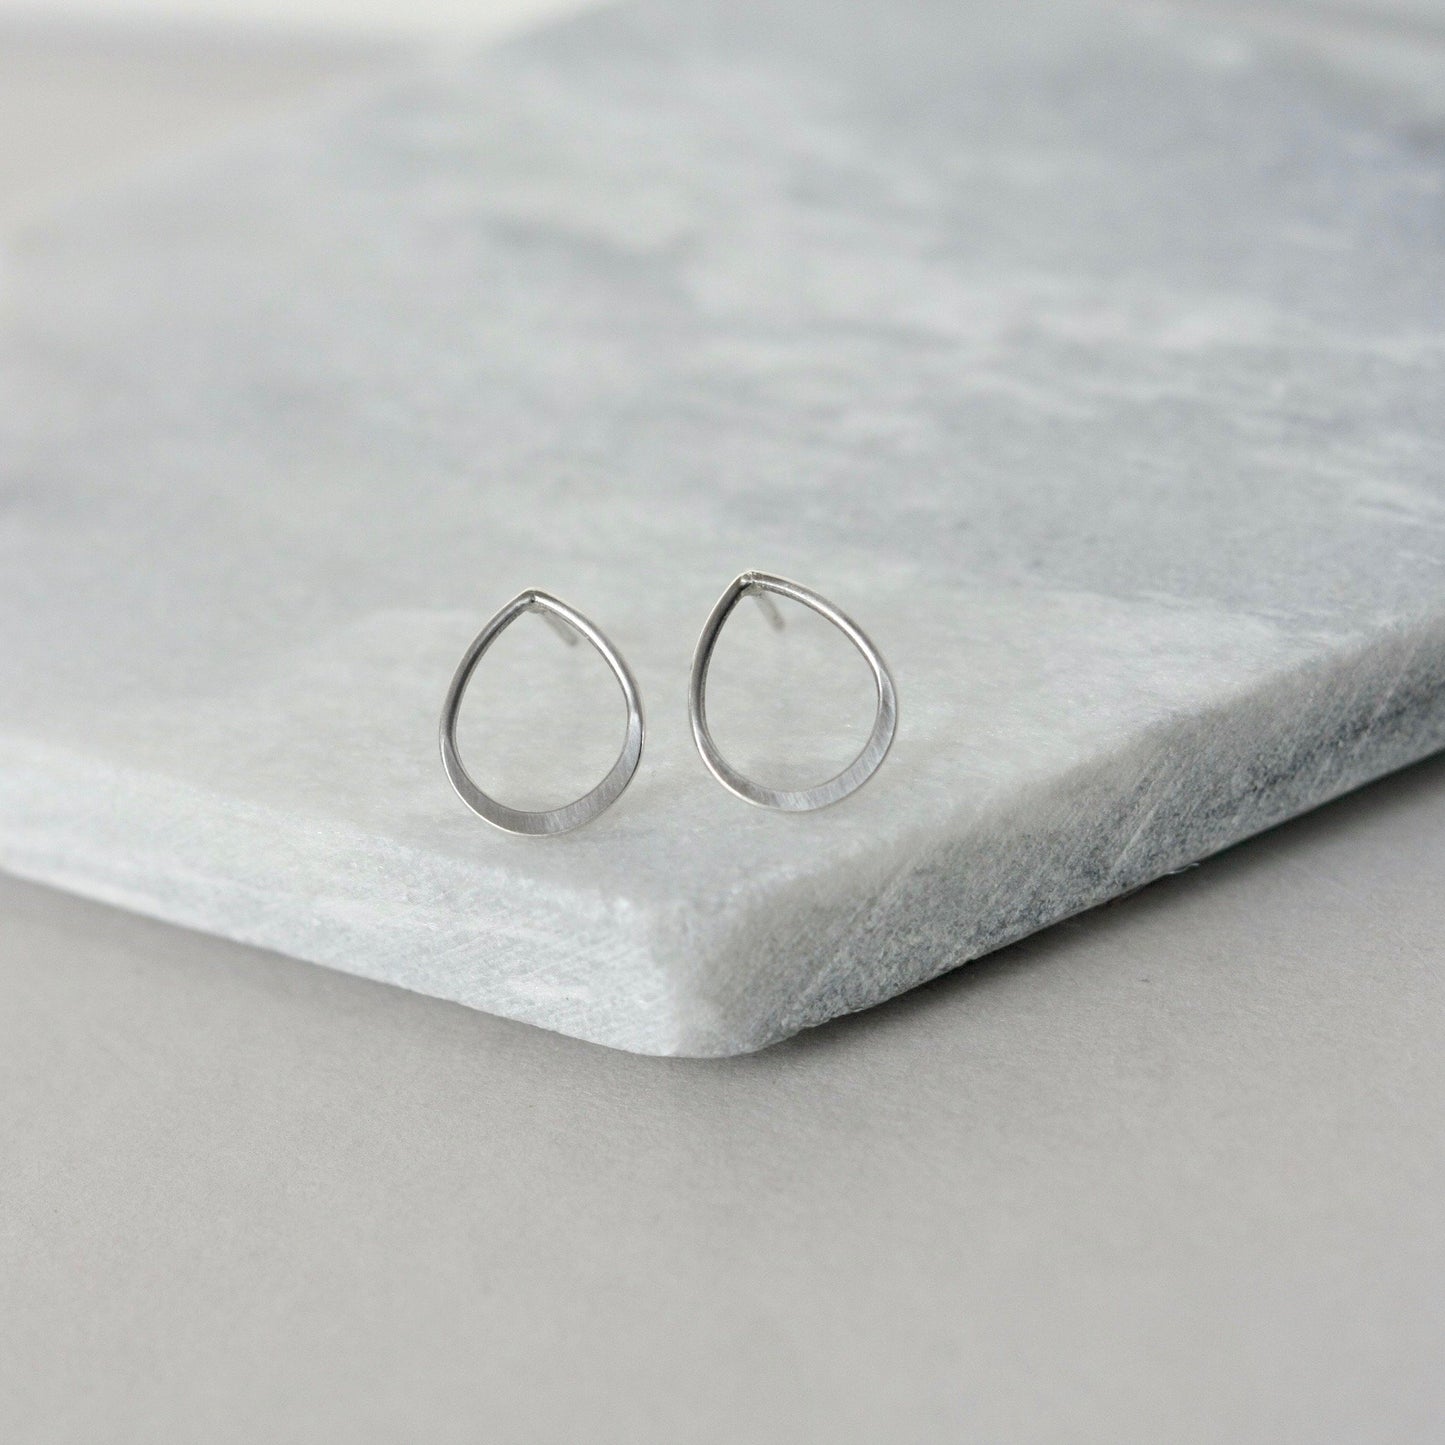 Small Sterling Silver Teardrop Stud Earrings